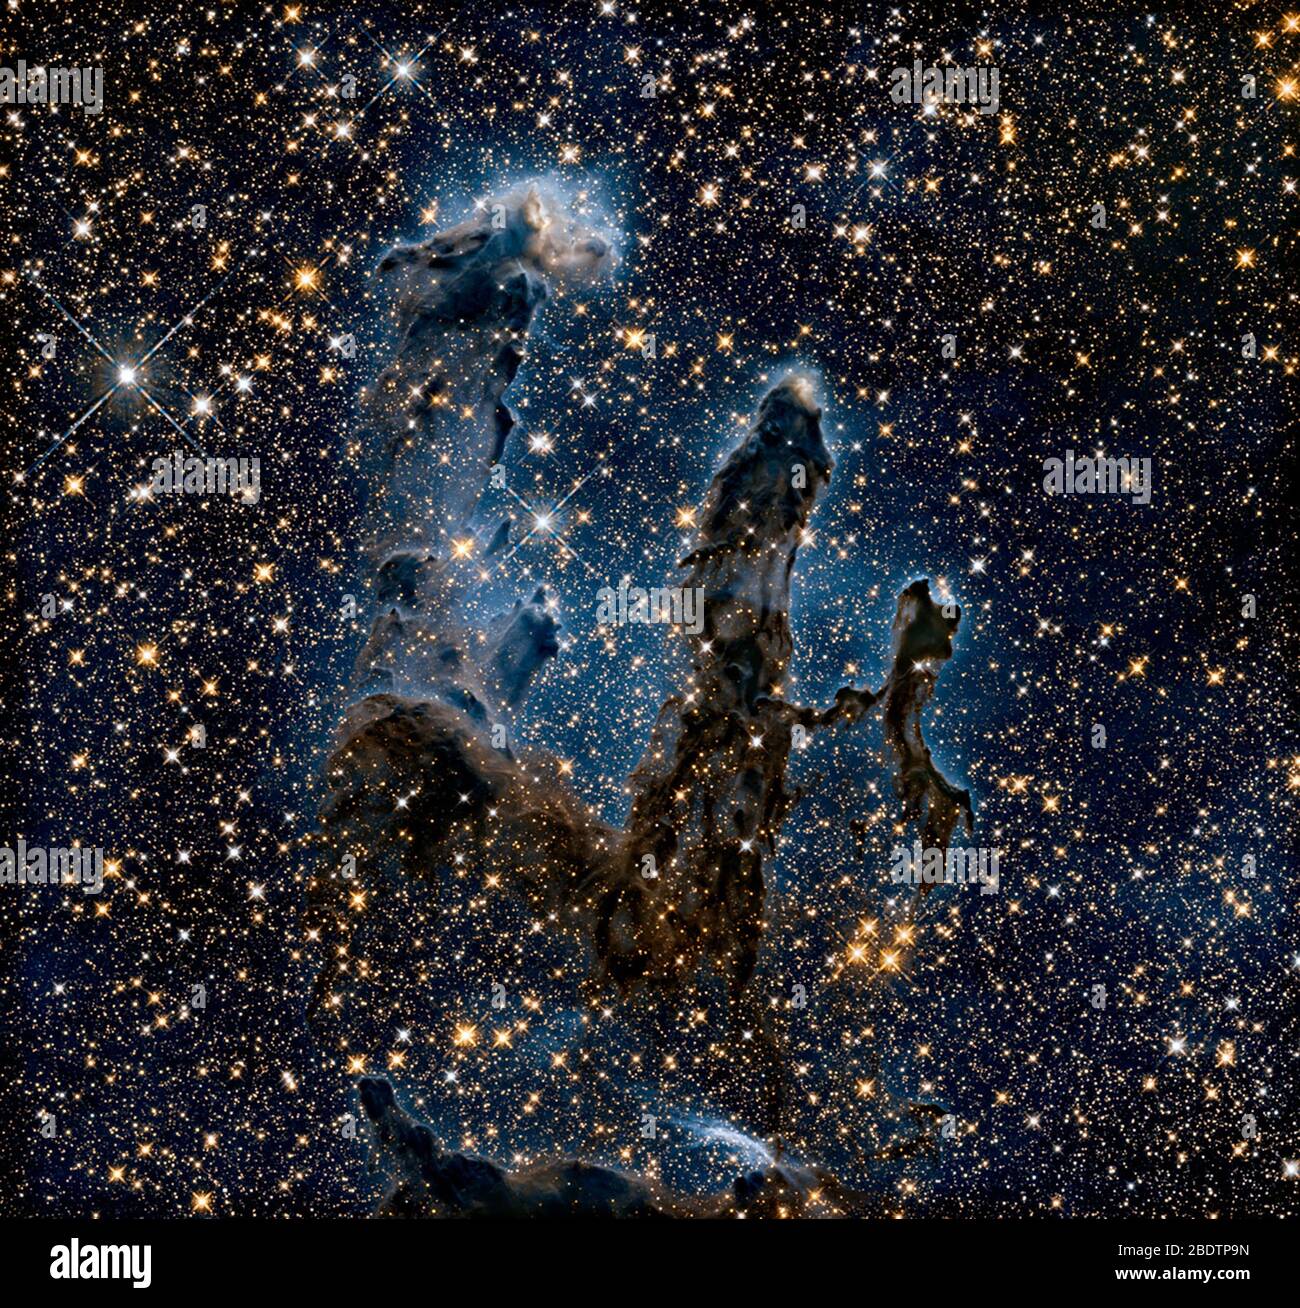 Das NASA/ESA Hubble Space Telescope hat eines seiner ikonischen und beliebtesten Bilder erneut besucht: Die Säulen der Schöpfung des Adler-Nebels. Dieses Bild zeigt die Säulen, wie sie im Infrarotlicht zu sehen sind, und ermöglicht es, Staub und Gas zu durchstechen und eine ungewohnte, aber ebenso erstaunliche Sicht auf die Säulen zu enthüllen. In dieser ätherischen Ansicht ist der gesamte Rahmen mit hellen Sternen gespickt, und es werden Babysterne innerhalb der Säulen selbst gebildet. Die gespenstischen Umrisse der Säulen wirken viel zierlicher und sind gegen einen unheimlichen blauen Dunst silhouettiert. Hubble erfasste auch die Säulen Stockfoto